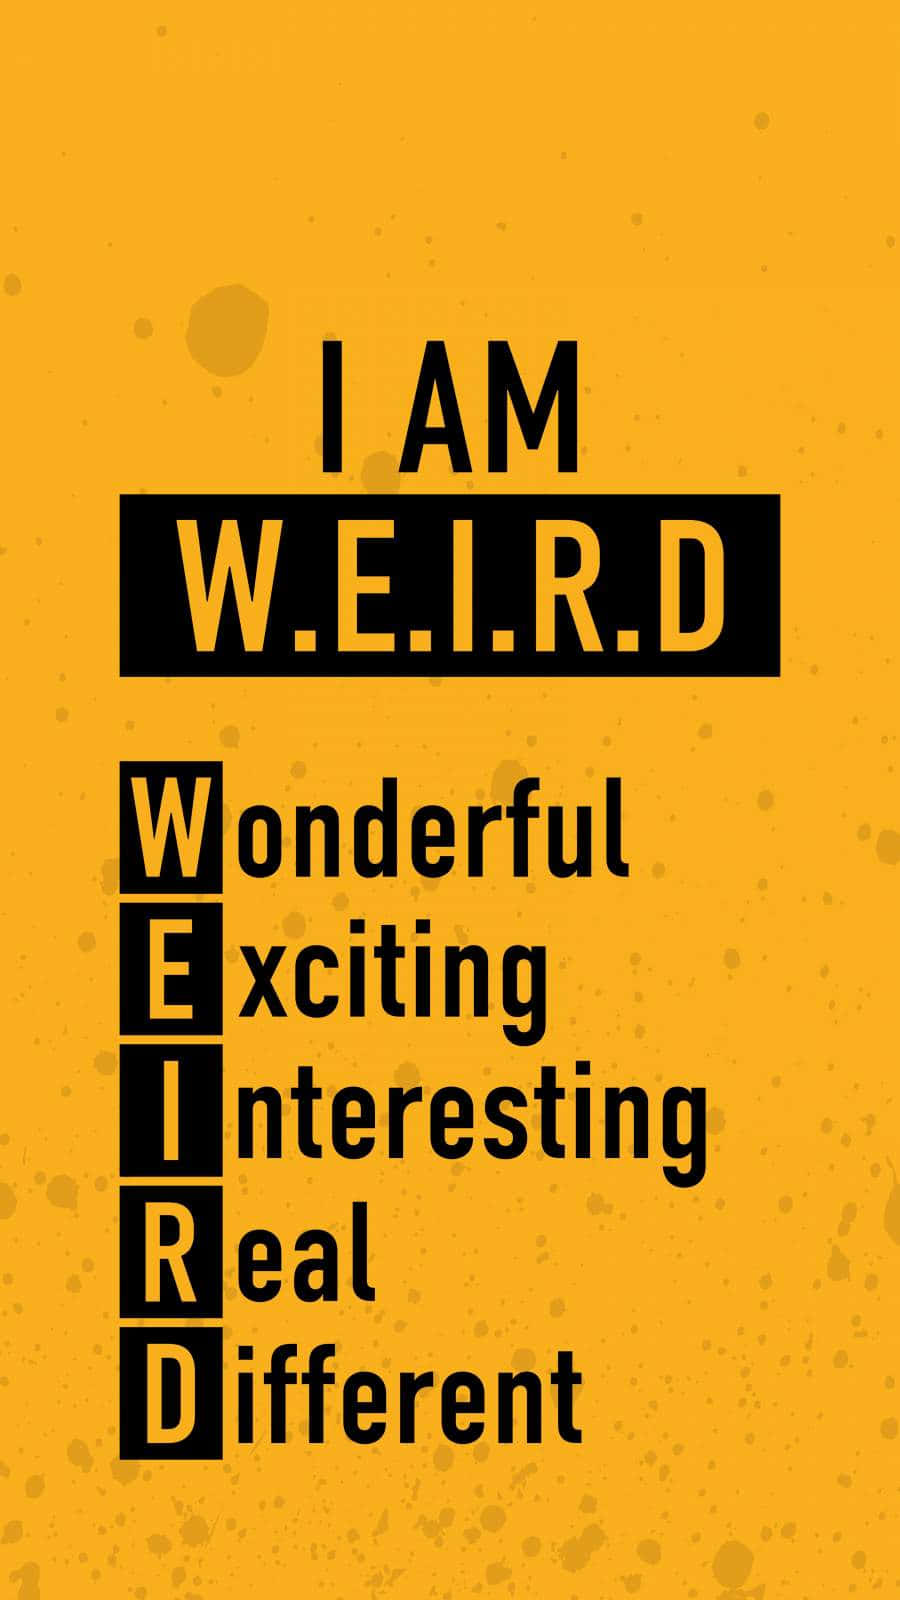 Weird Acronym Inspirational Poster Wallpaper